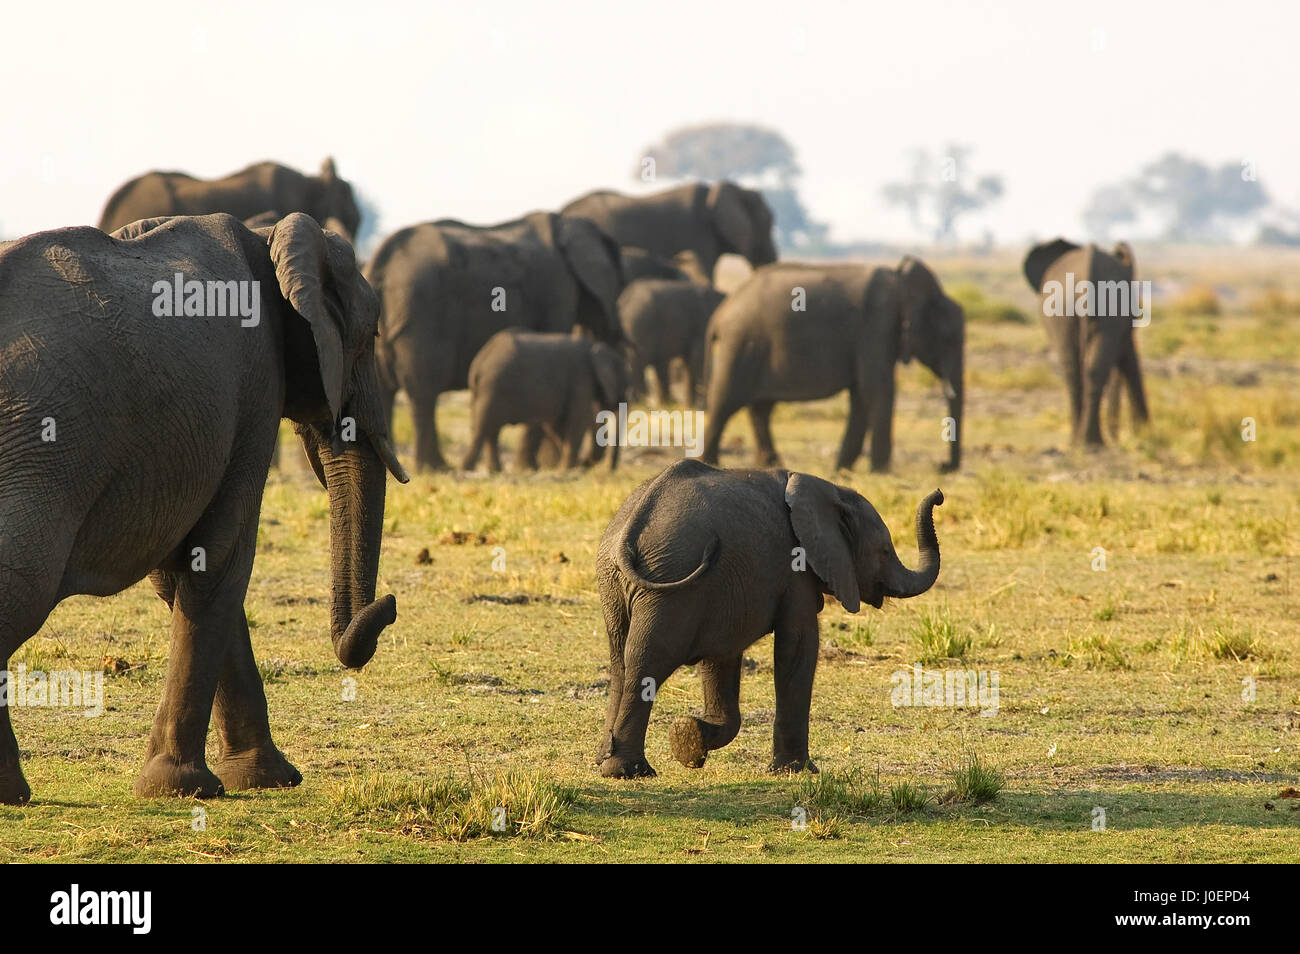 Elephants at Chobe National Park, Botswana Stock Photo